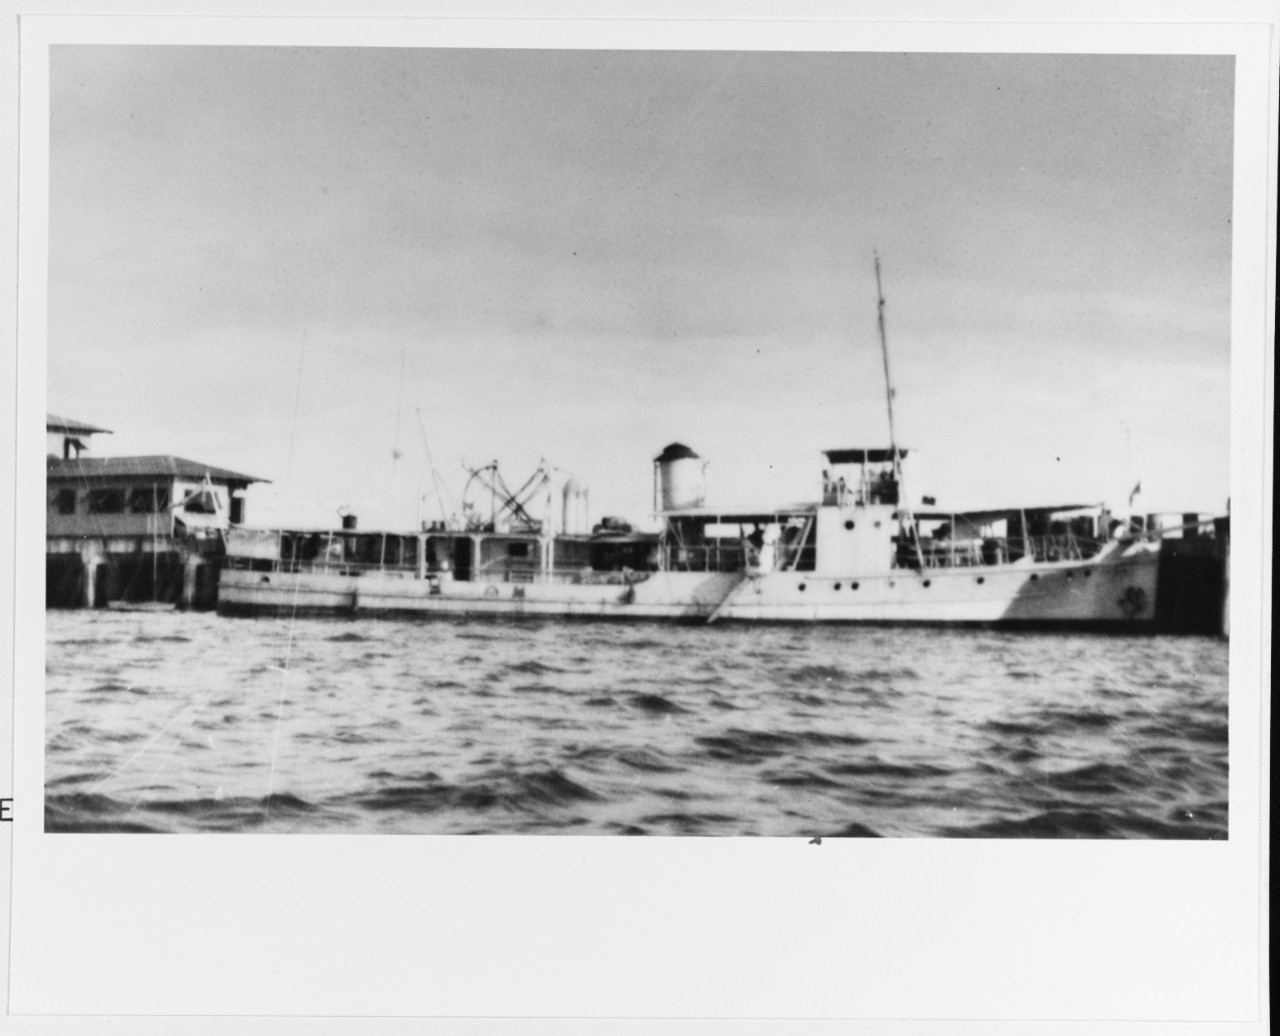 JUNIN (Colombian patrol vessel, 1925)